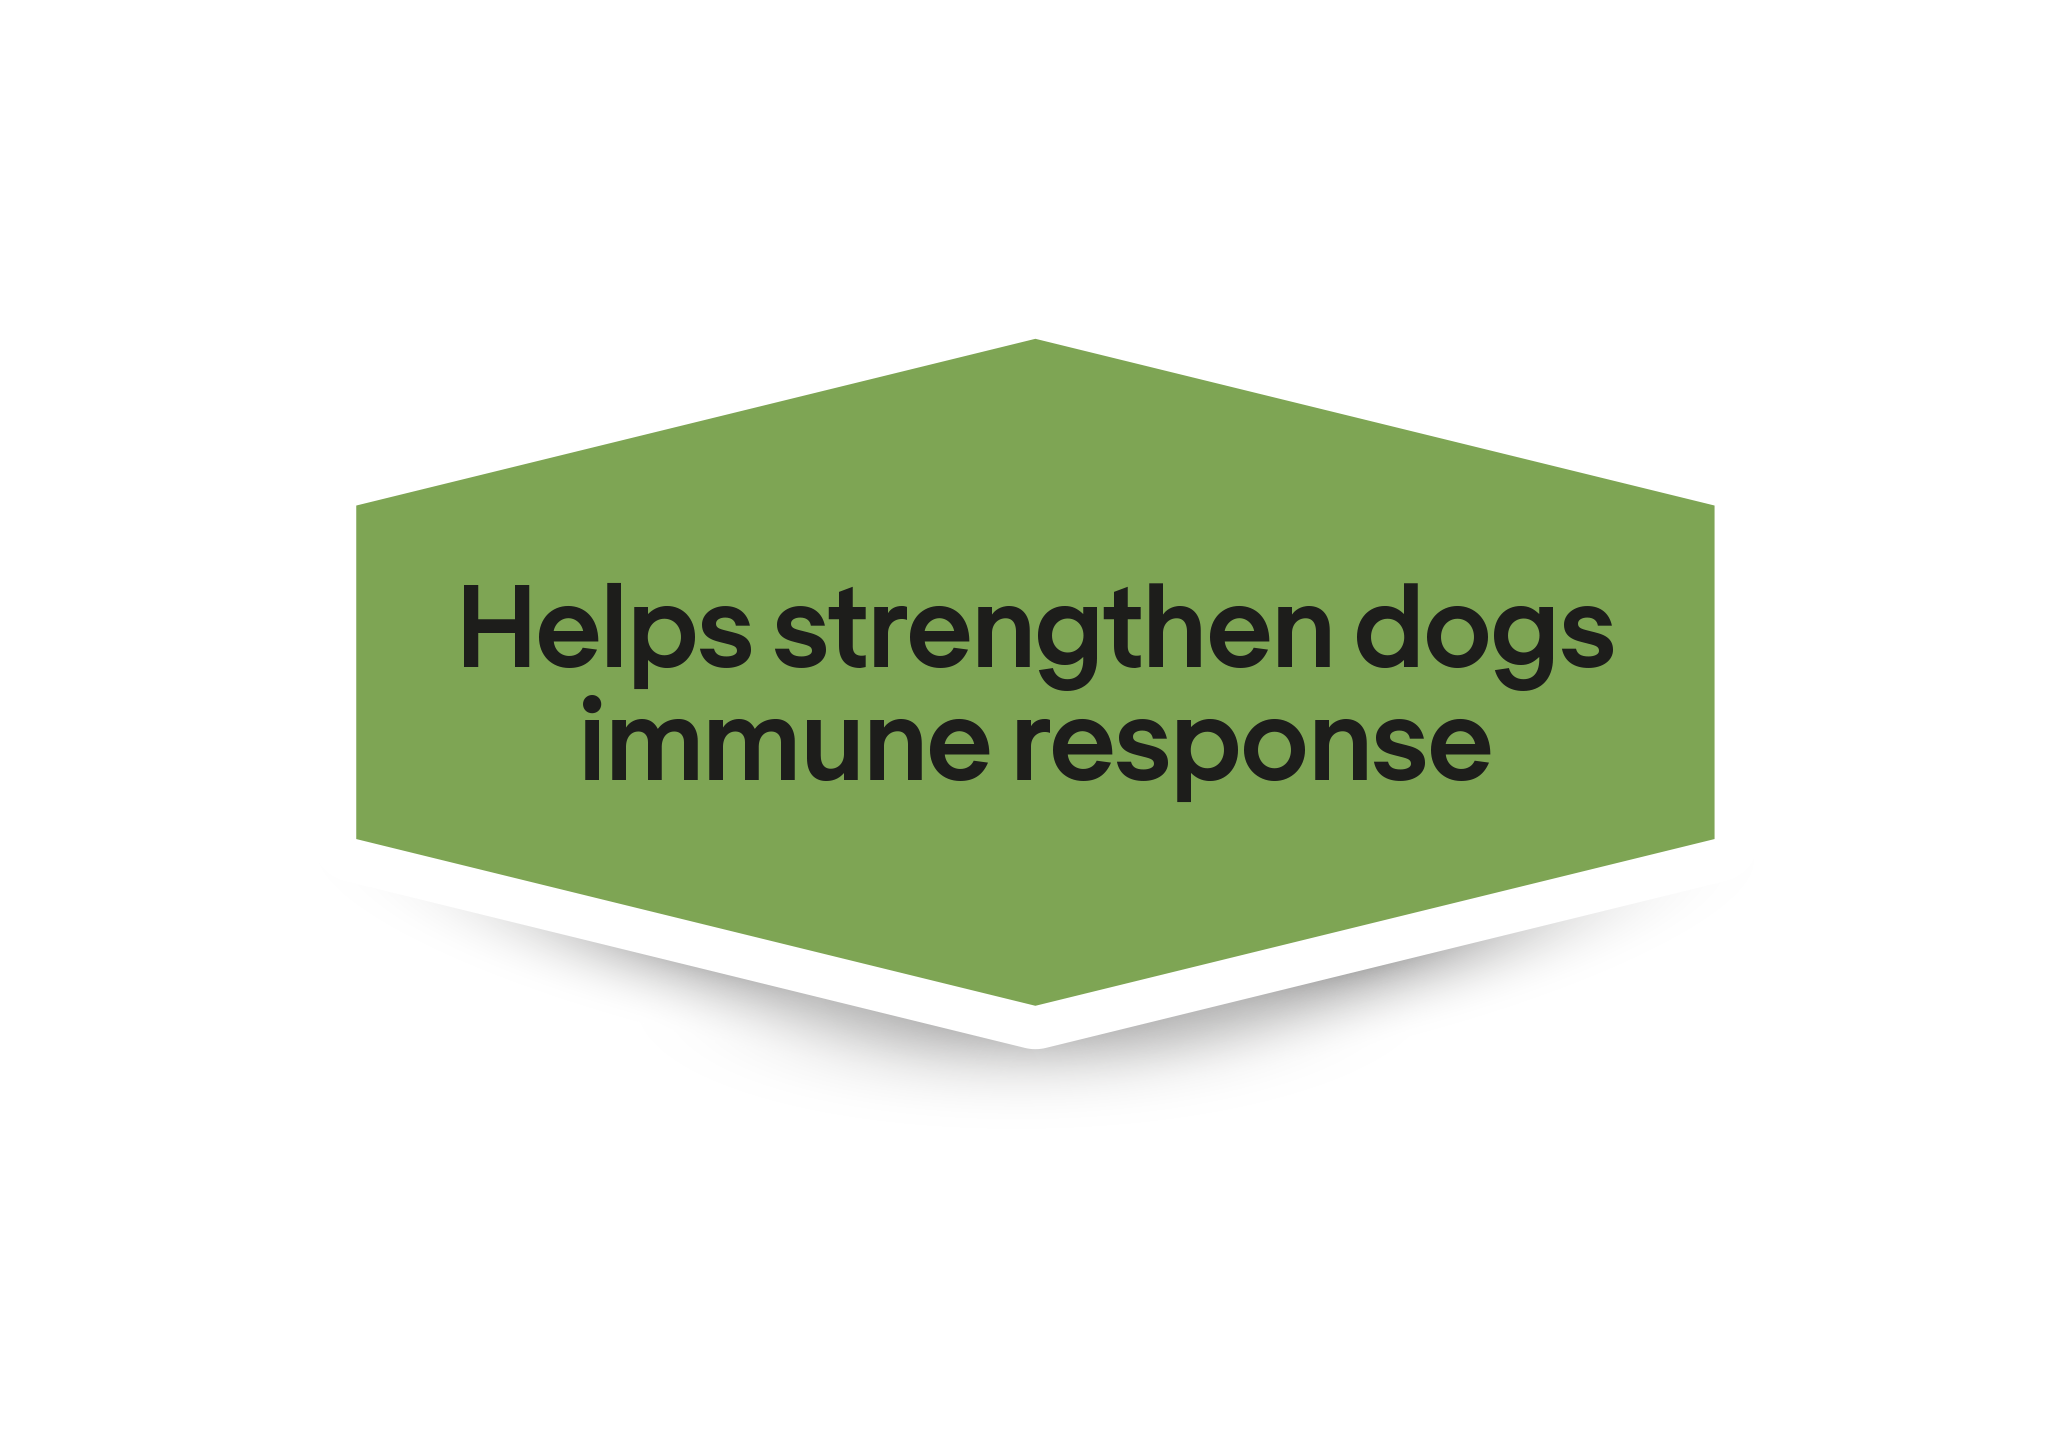 Βοηθά στην ενίσχυση της ανοσολογικής απόκρισης των σκύλων